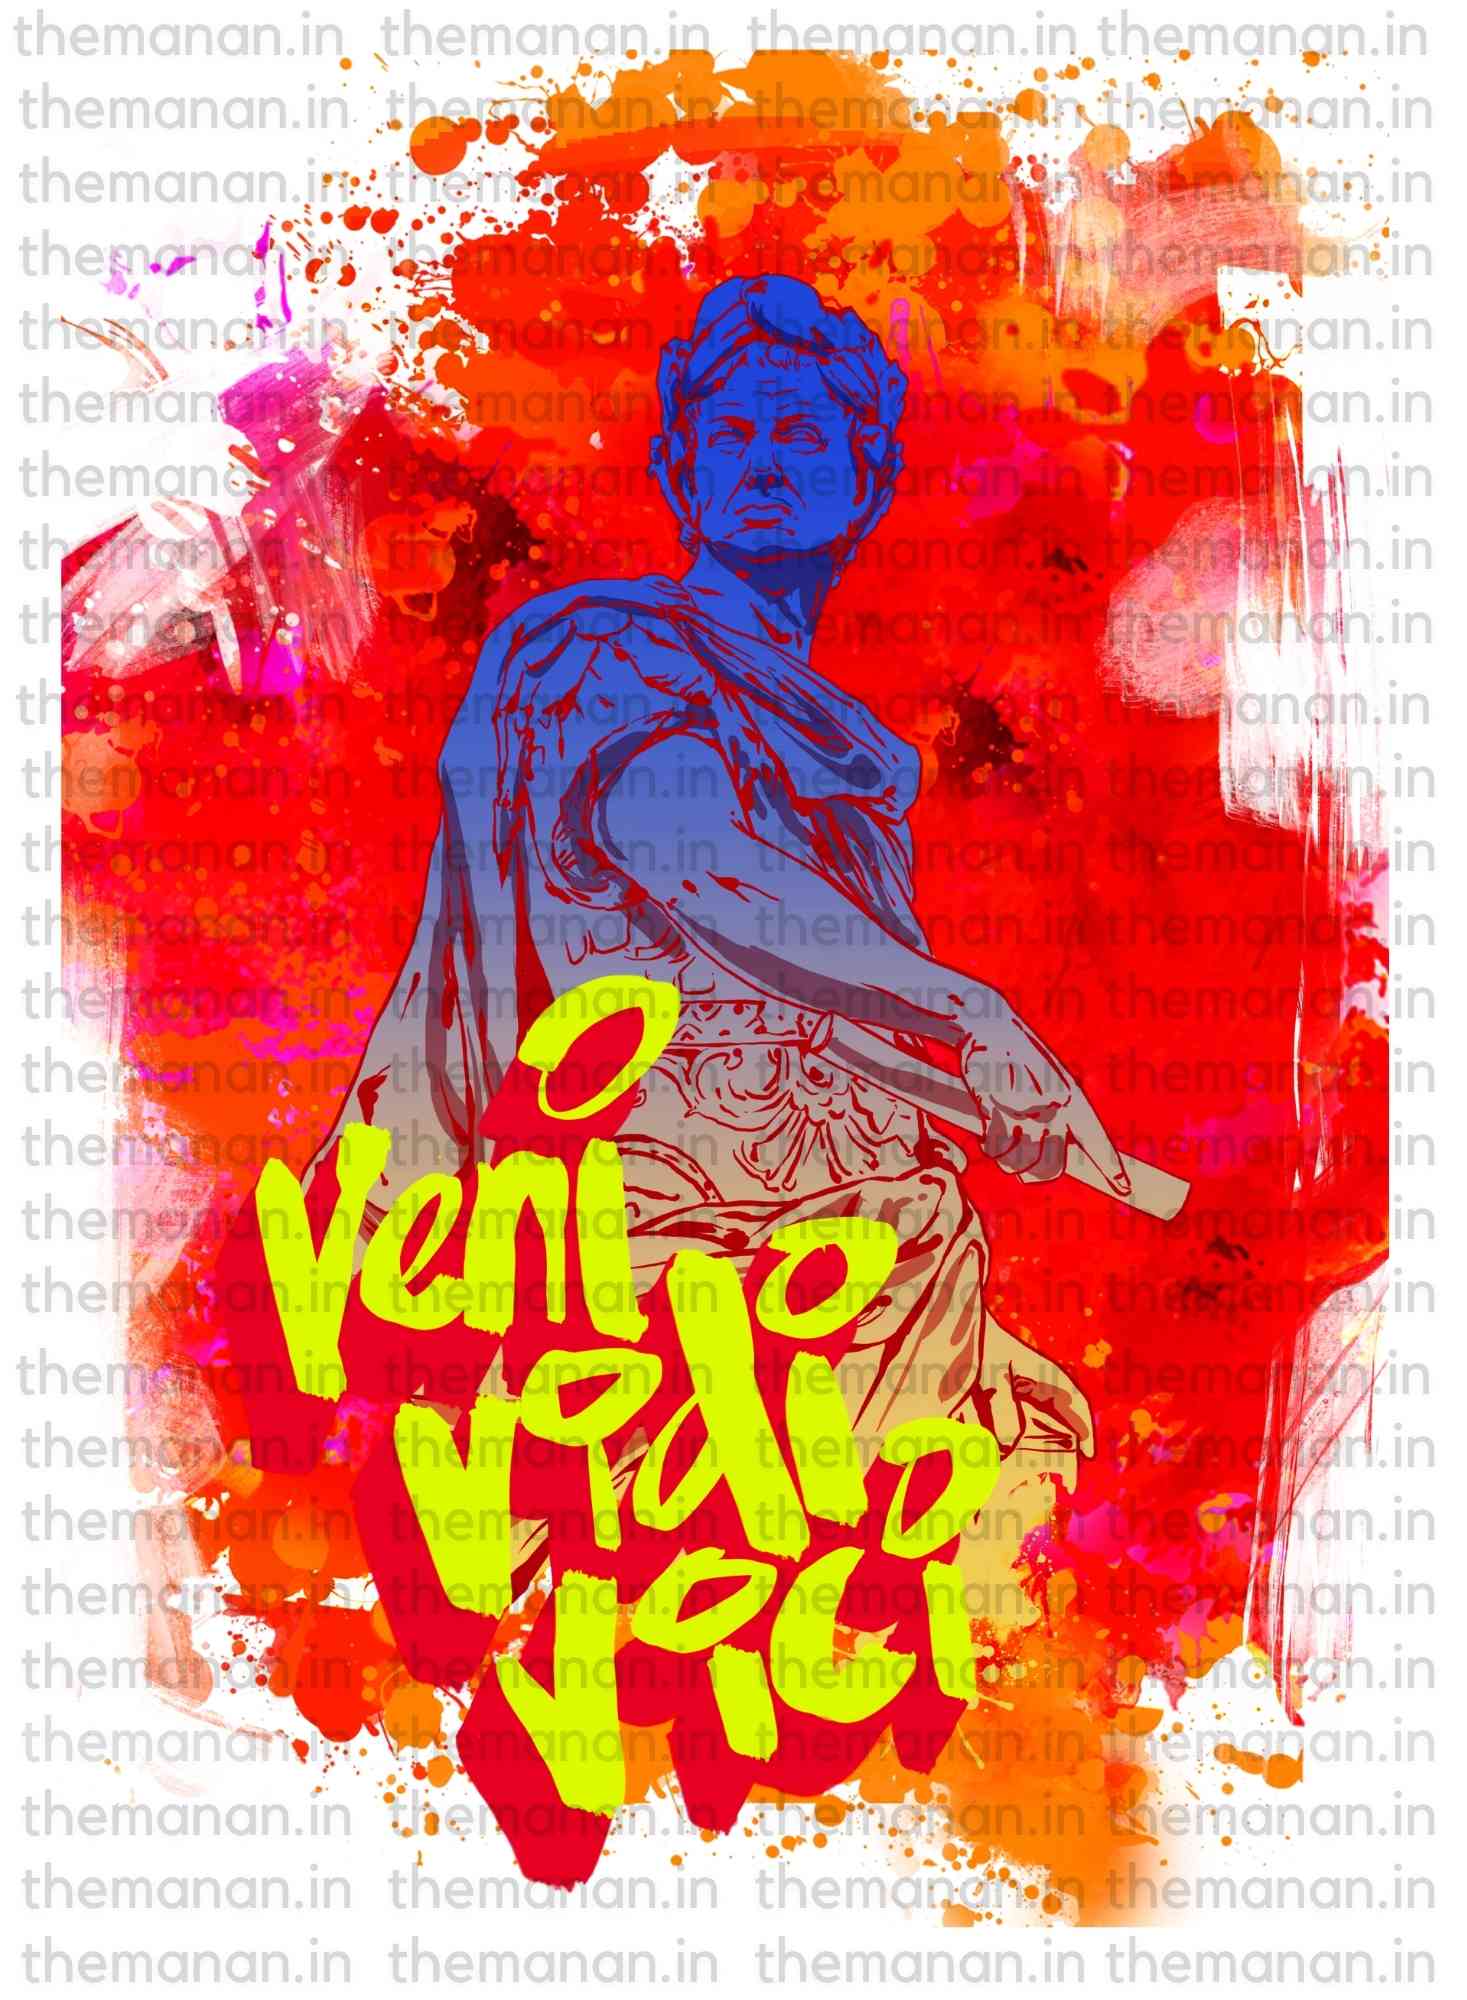 Veni Vidi Vici - Women T-shirt